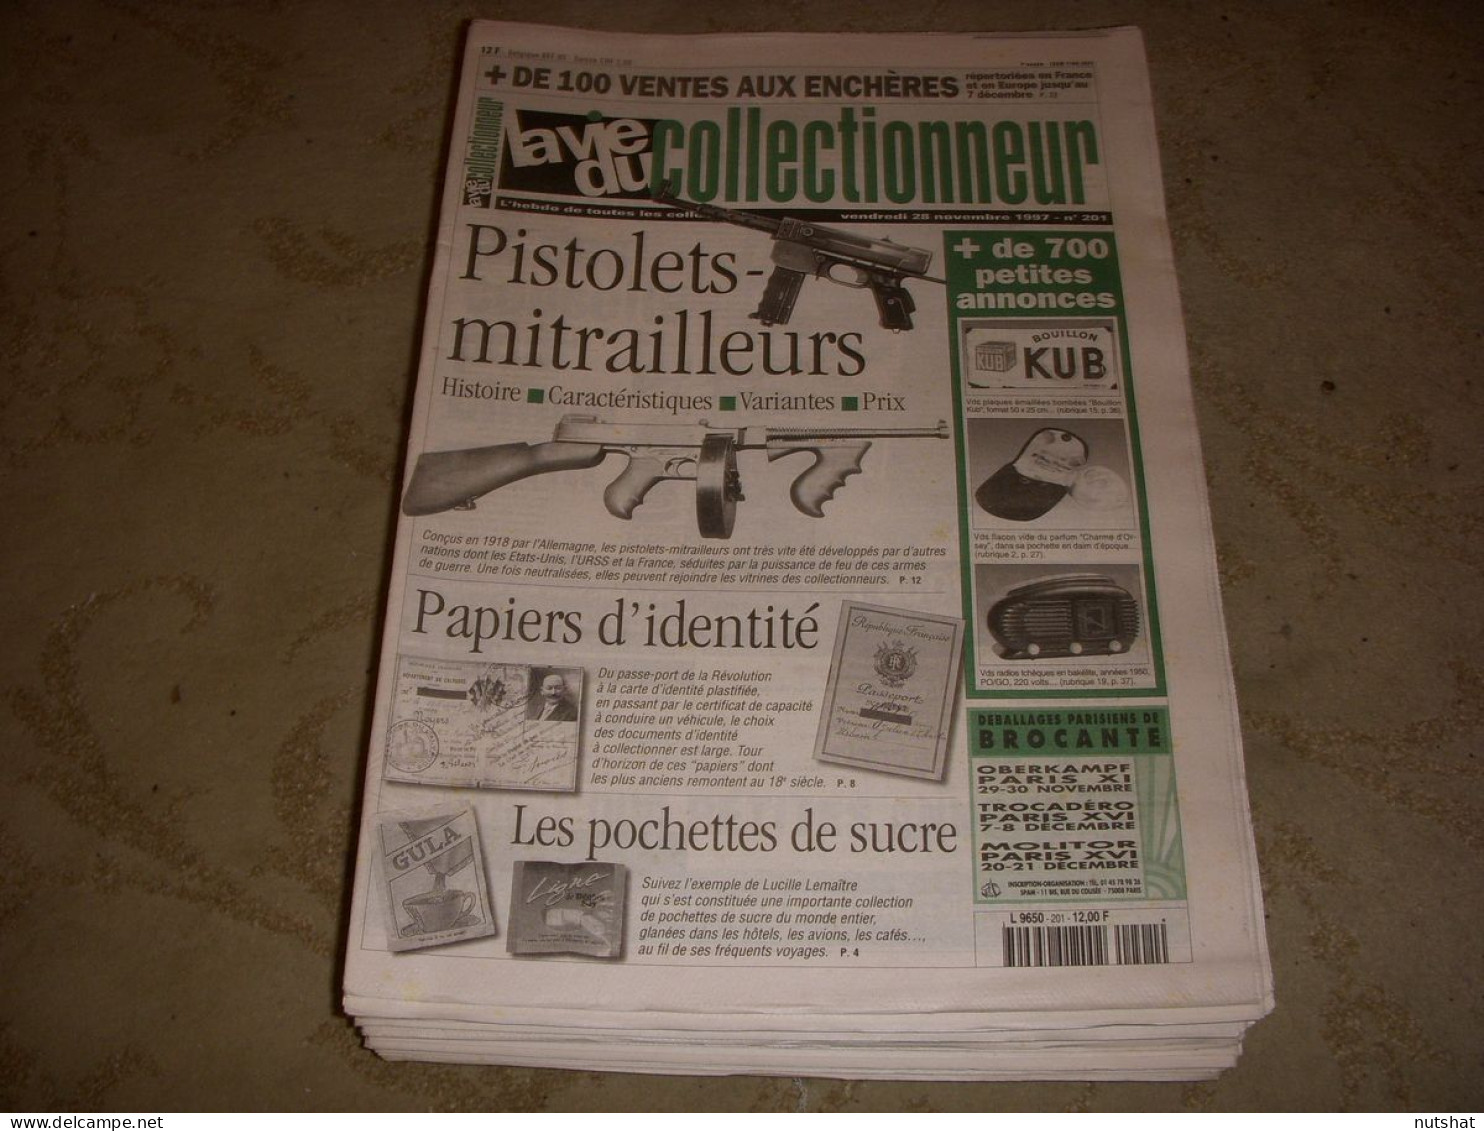 LVC VIE Du COLLECTIONNEUR 201 28.11.1997 PISTOLET MITRAILLEURS POCHETTE SUCRE  - Brocantes & Collections